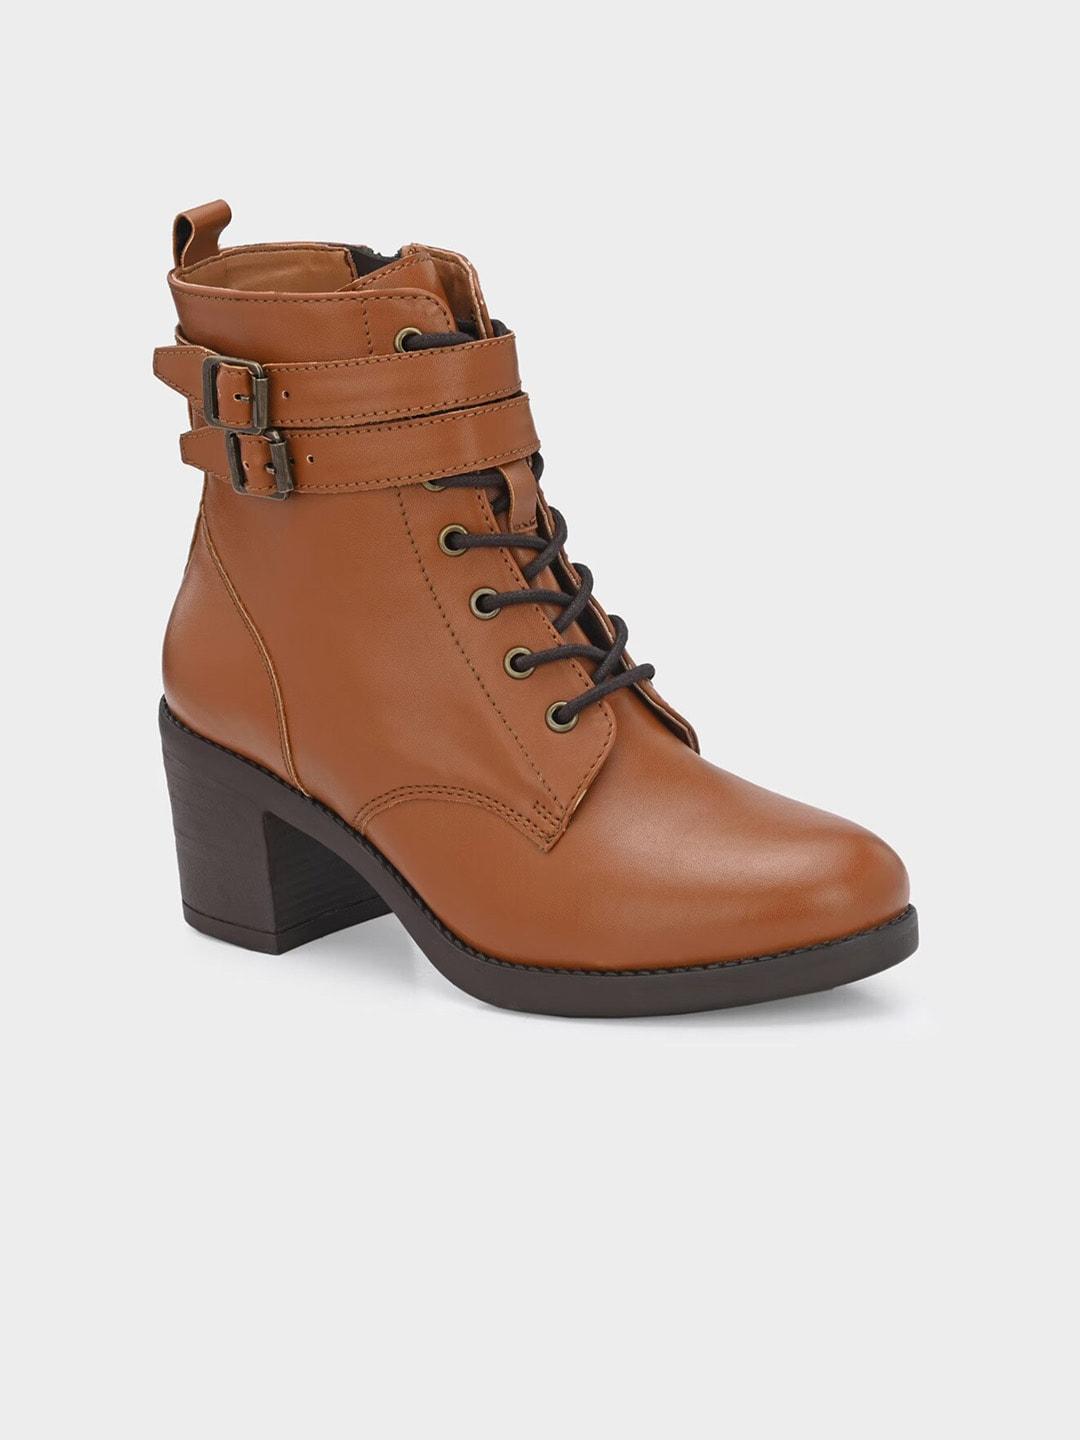 miseen women block-heeled buckle detail mid-top regular boots